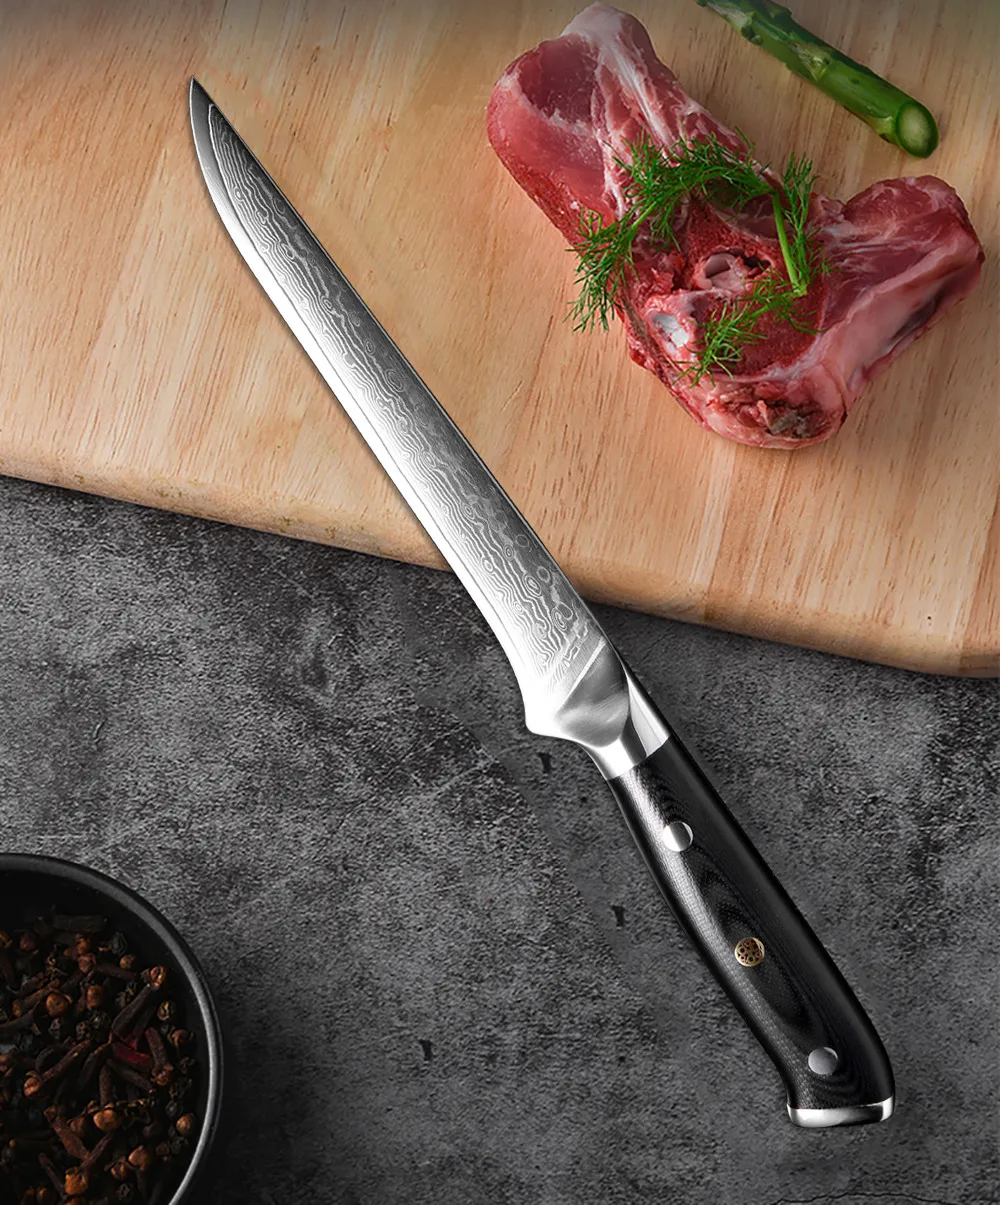 XITUO дамасский стальной кухонный нож повара VG10 Профессиональный японский сантоку суши Кливер ножи для чистки овощей и фруктов набор G10 ручка